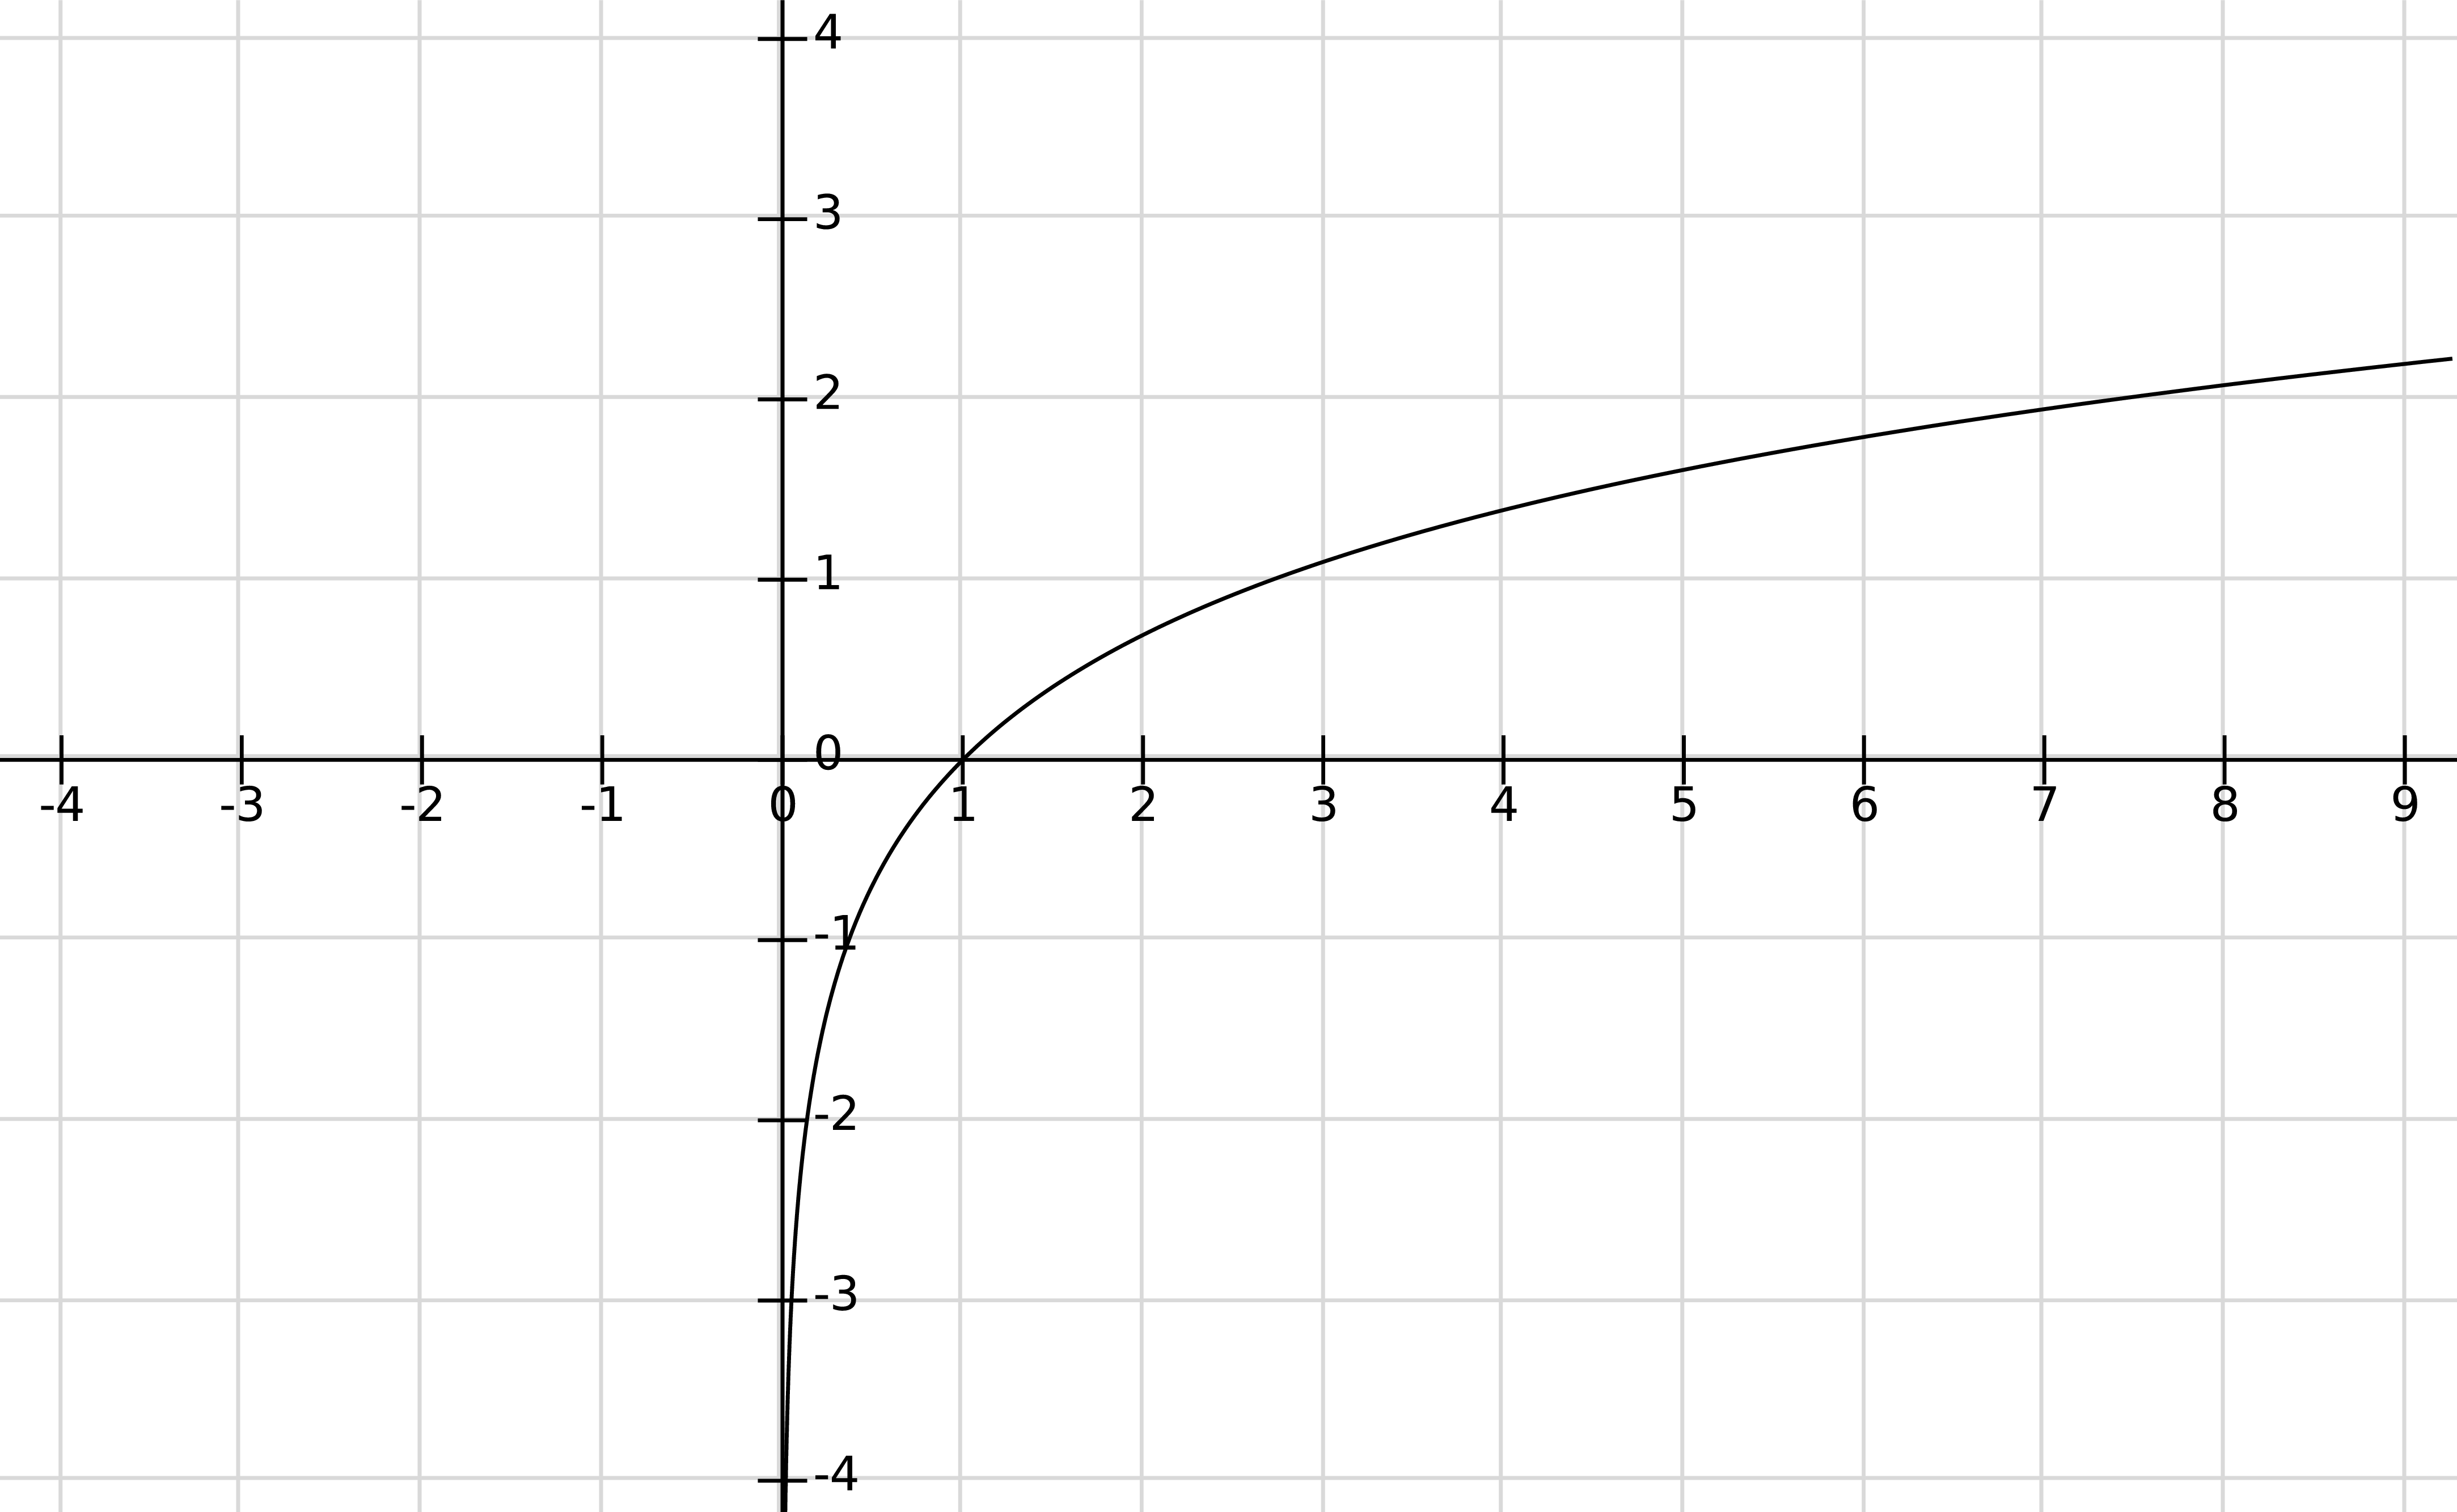 Le logarithme en base > 1 est une fonction strictement croissante